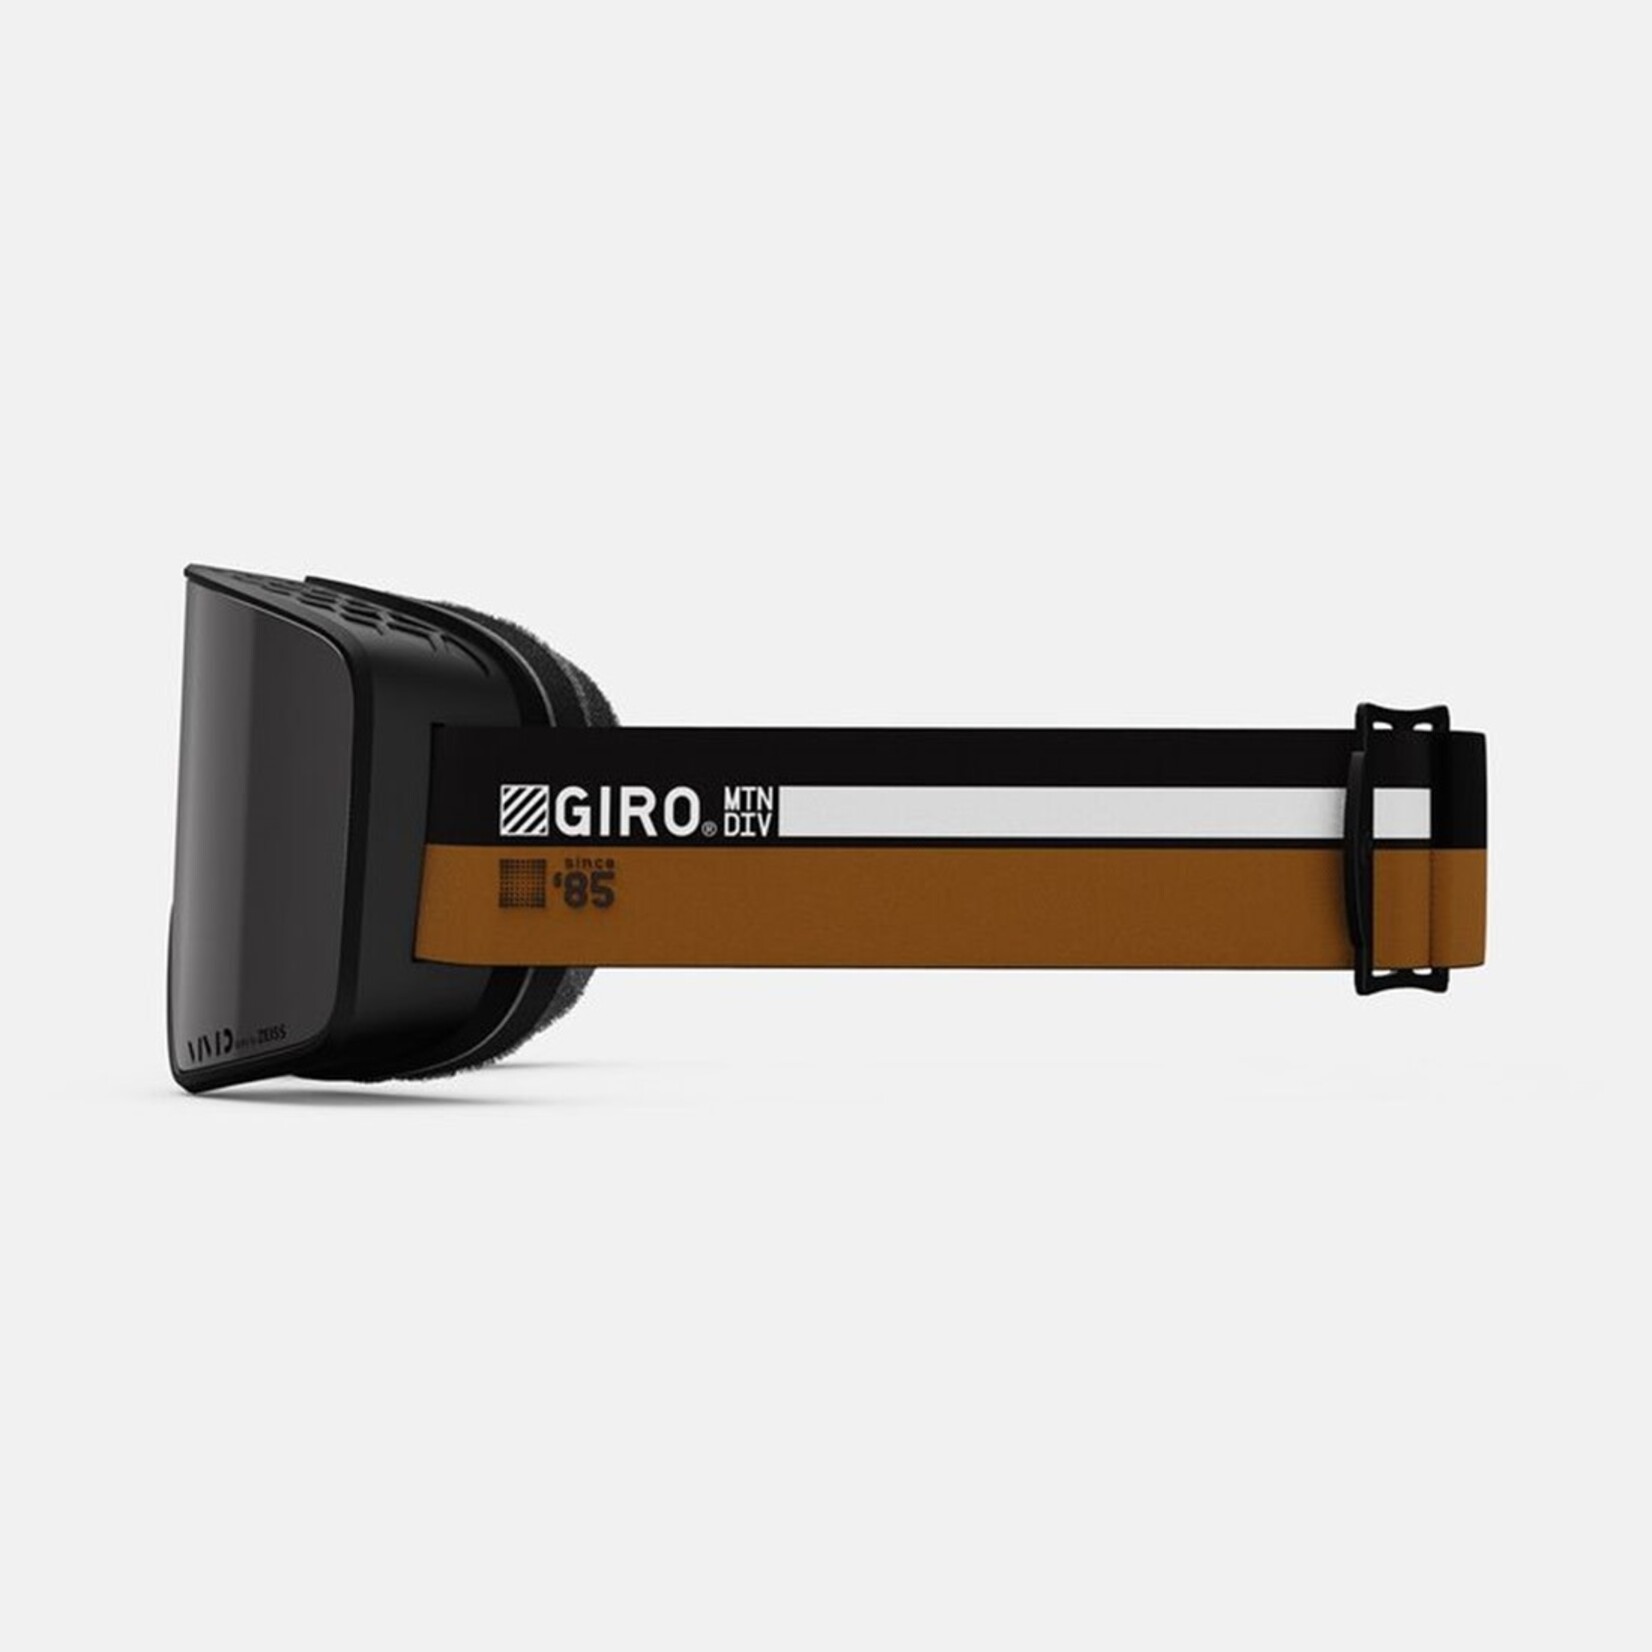 Giro Giro Method Goggle